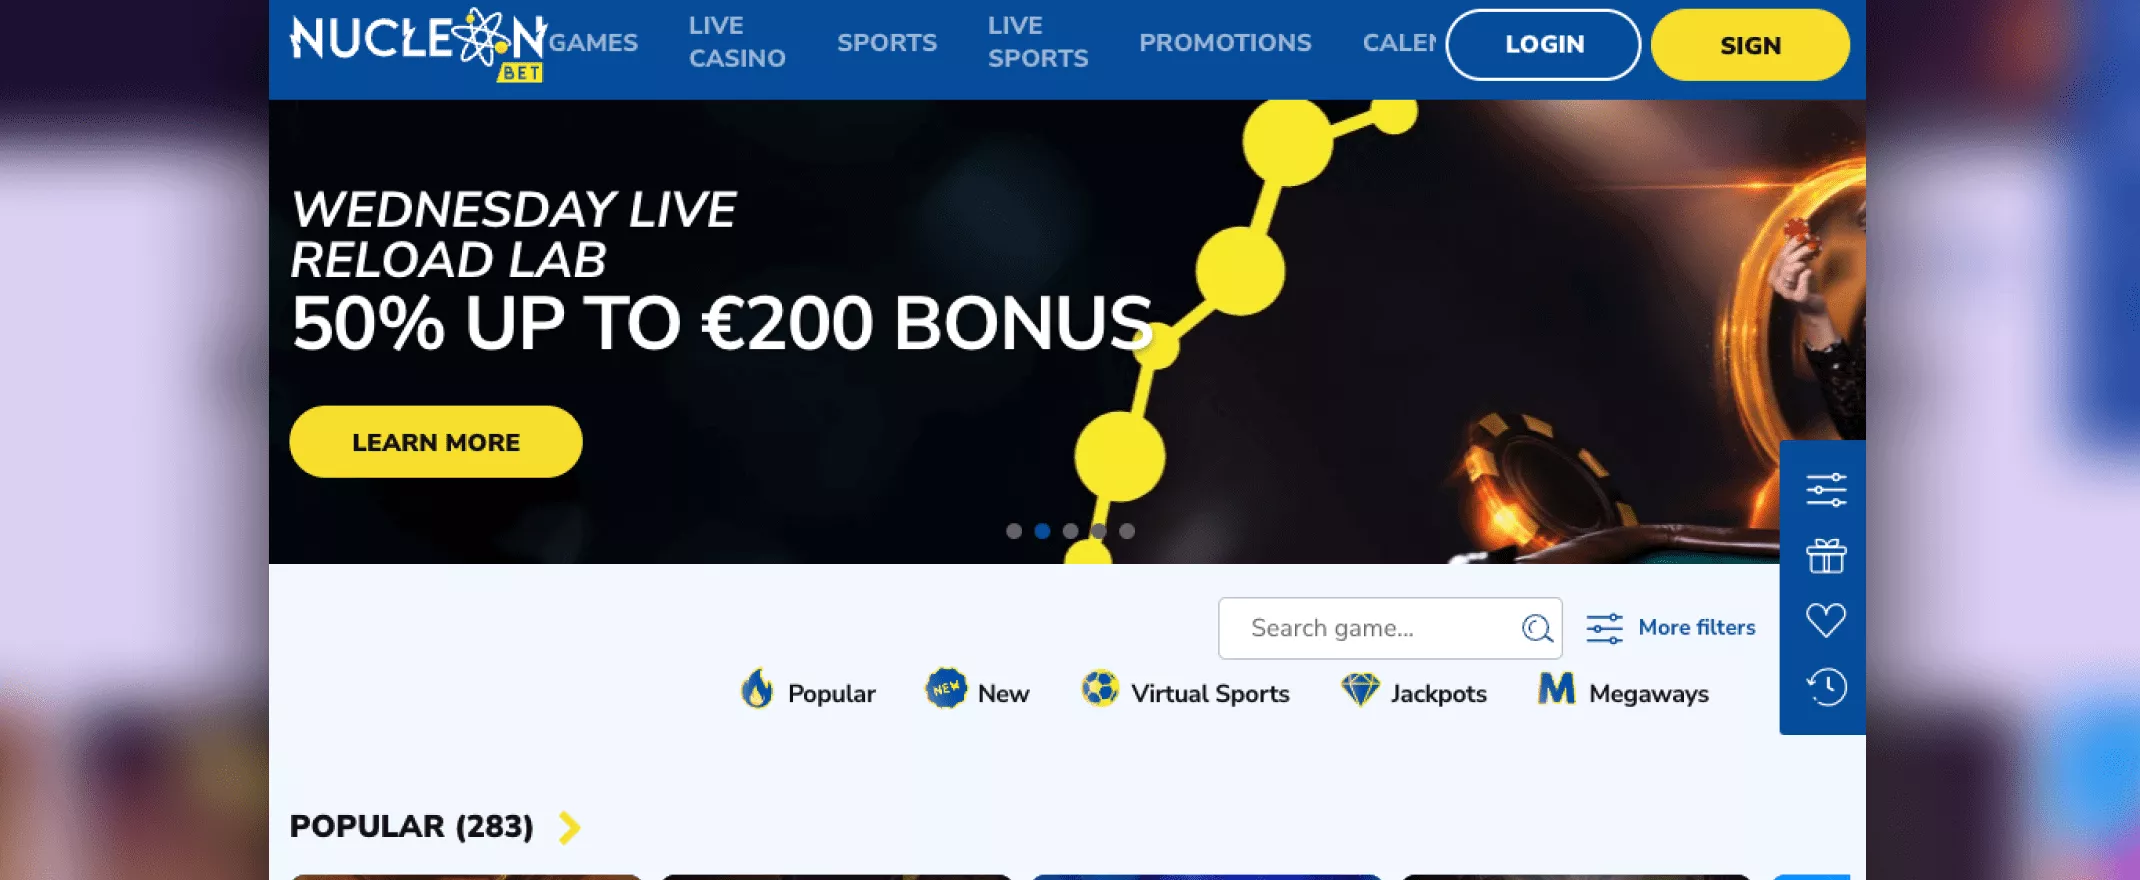 nucleonbet casino homepage screenshot